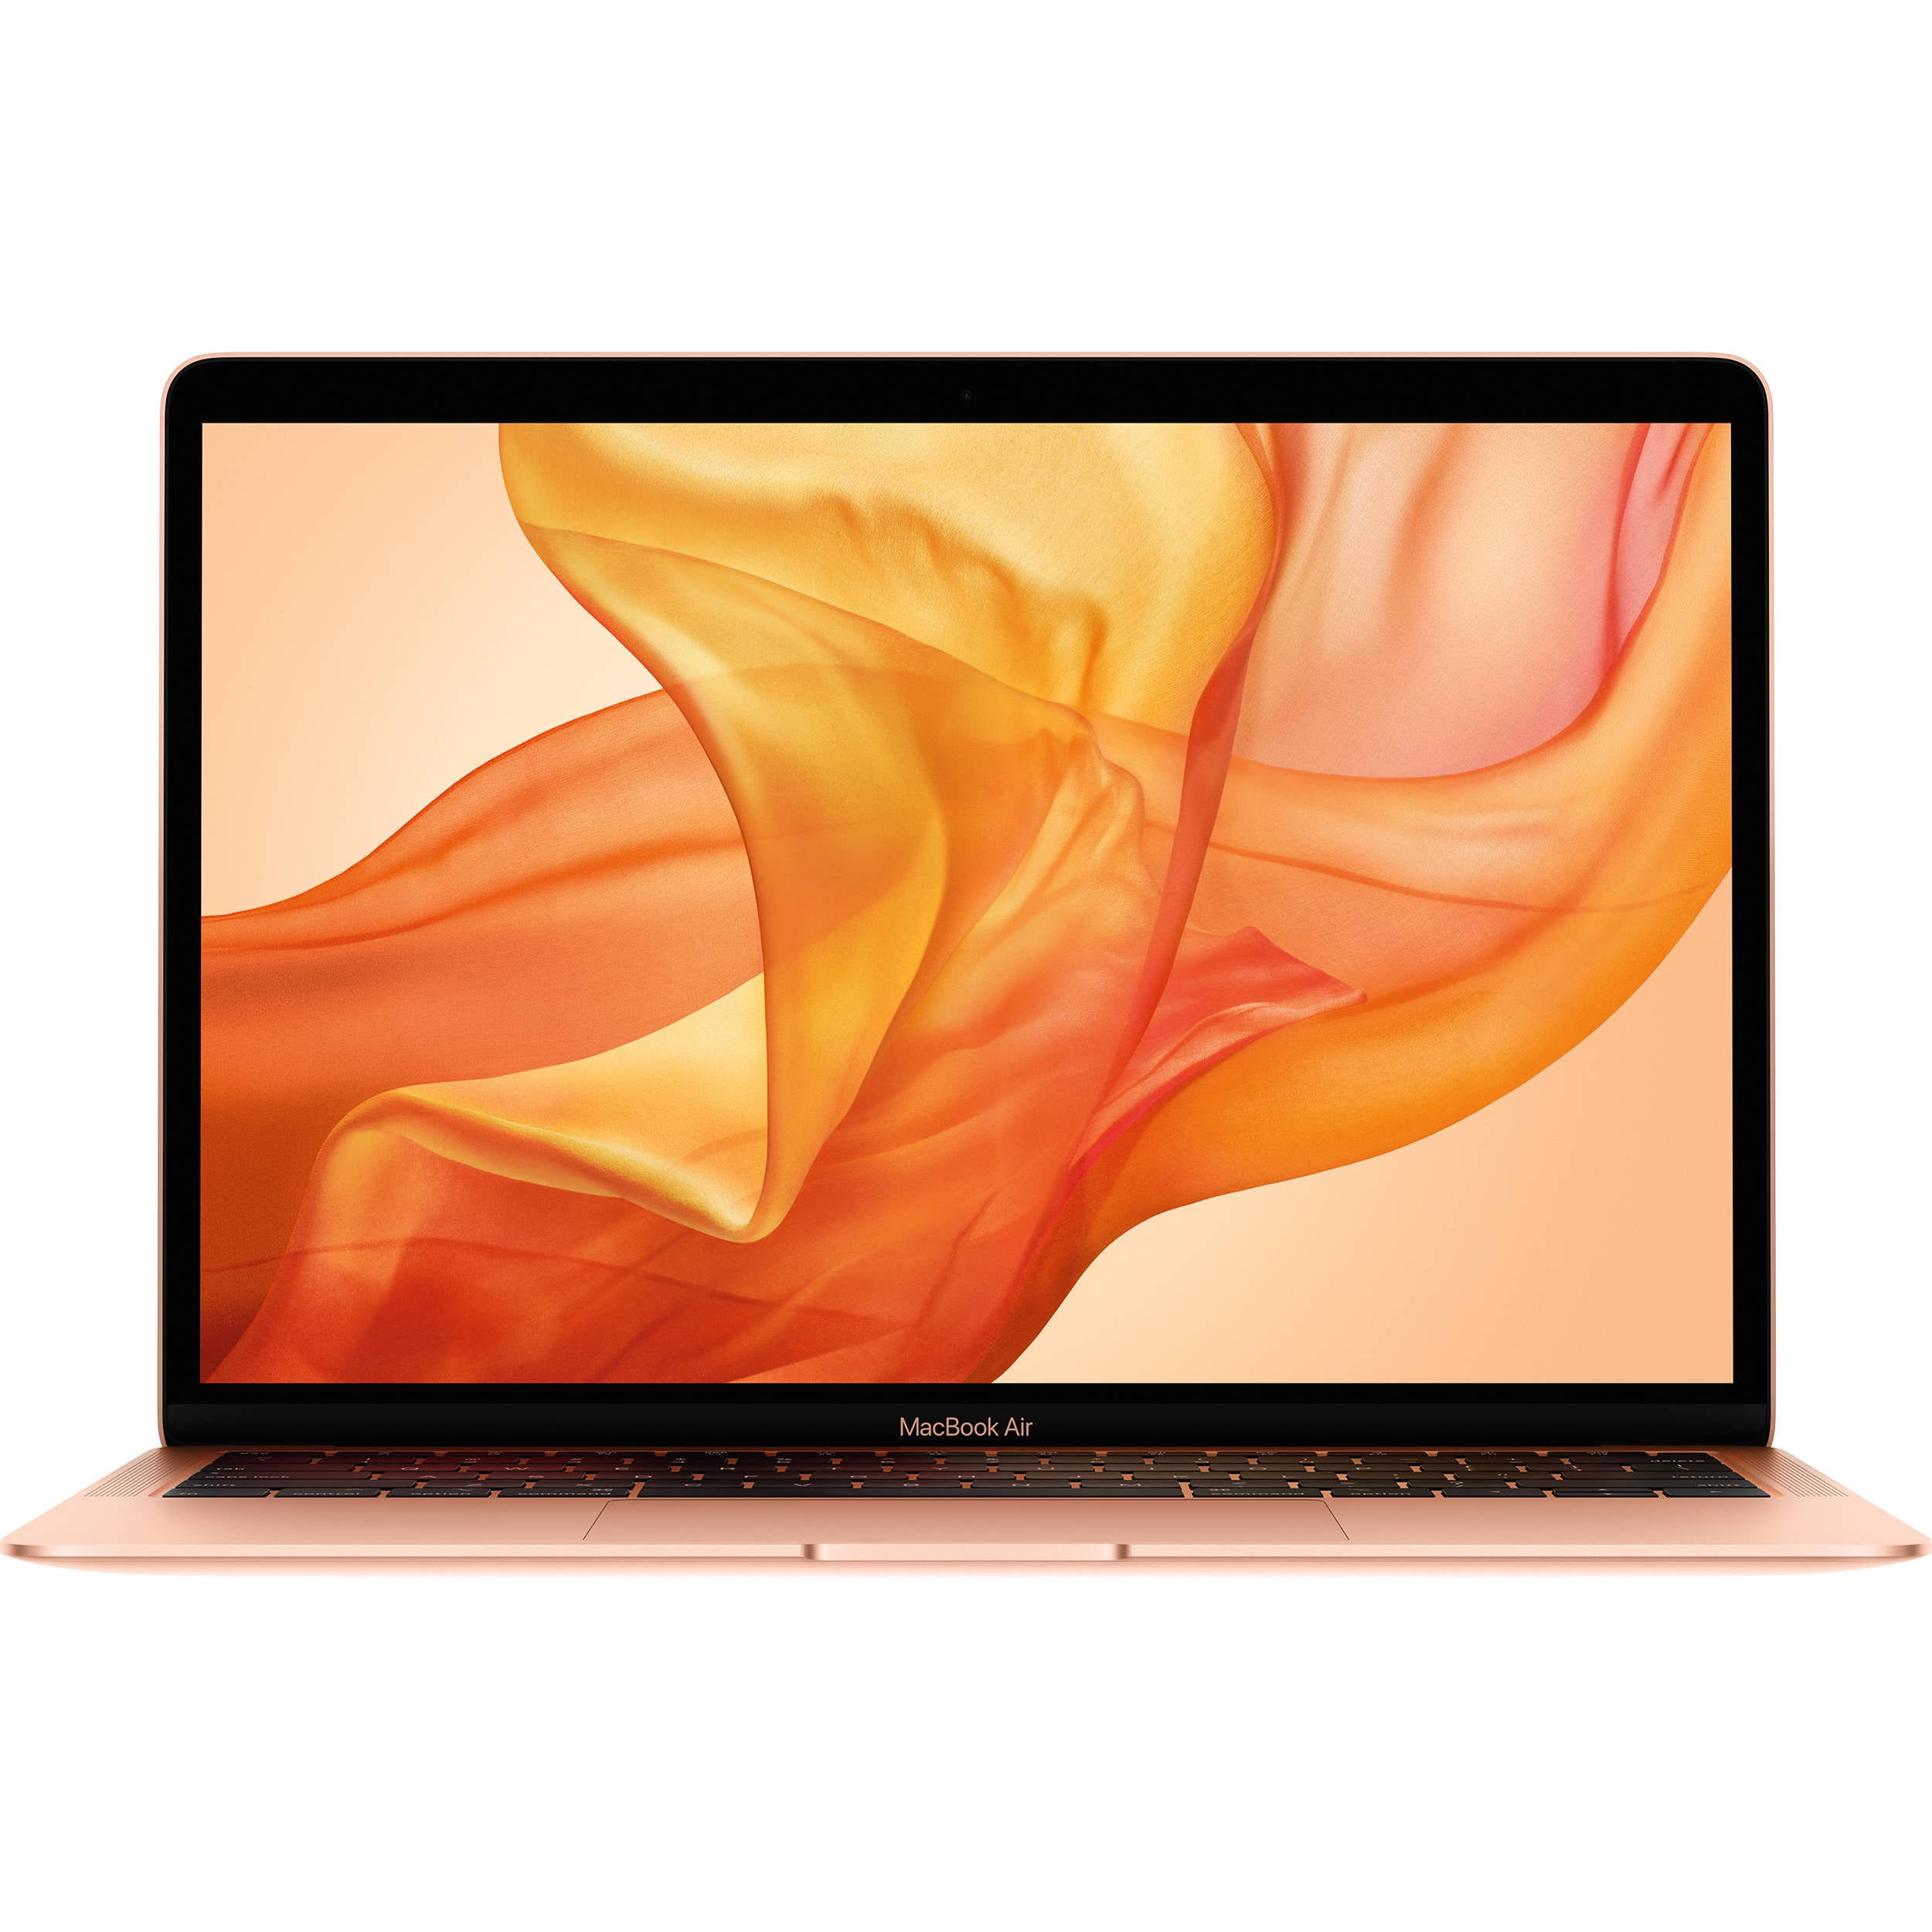 Restored Apple MacBook Air 13.3in MVFH2LL/A 2019 - Intel Core i5 